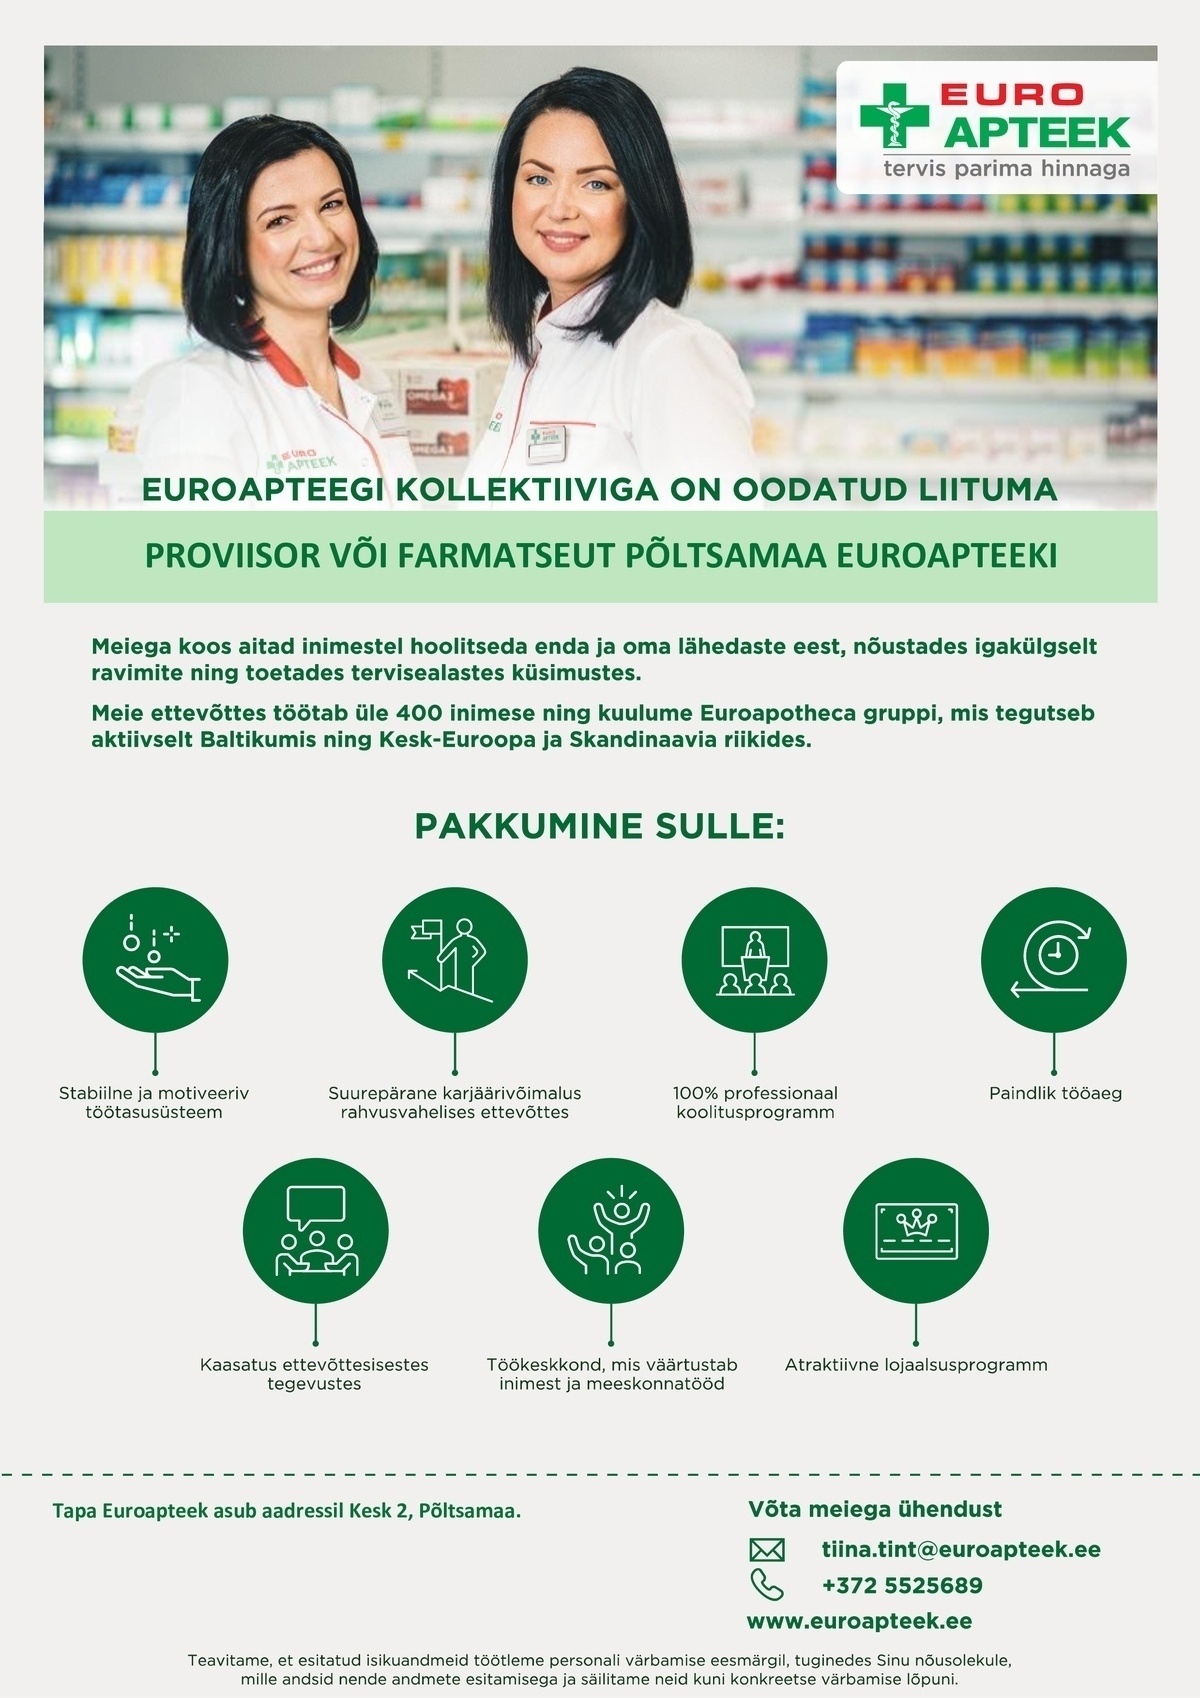 Euroapteek OÜ Proviisor või farmatseut  Põltsamaa Keskuse apteeki